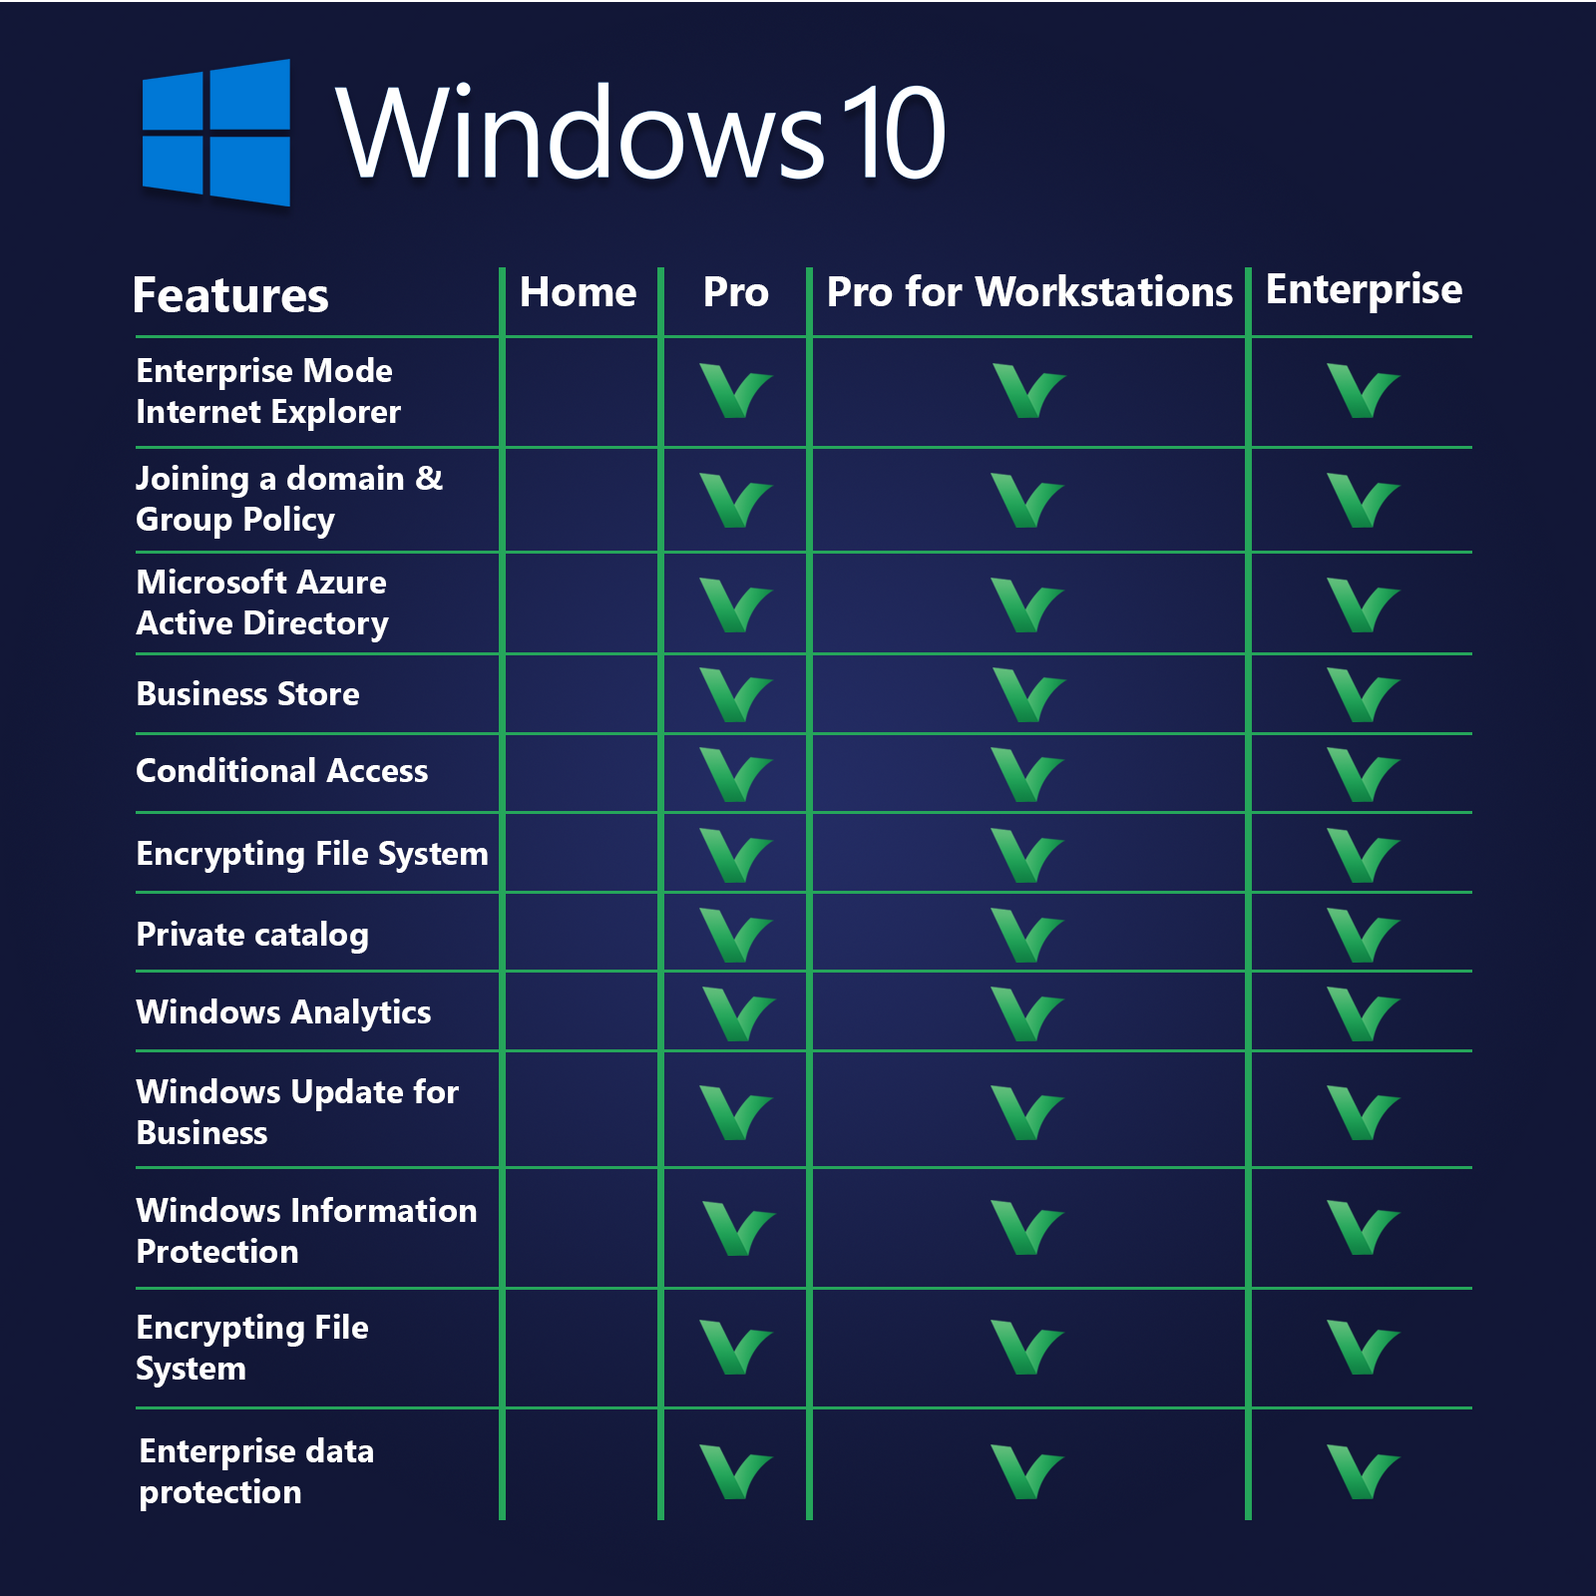 windows 10 pro workstation product key free